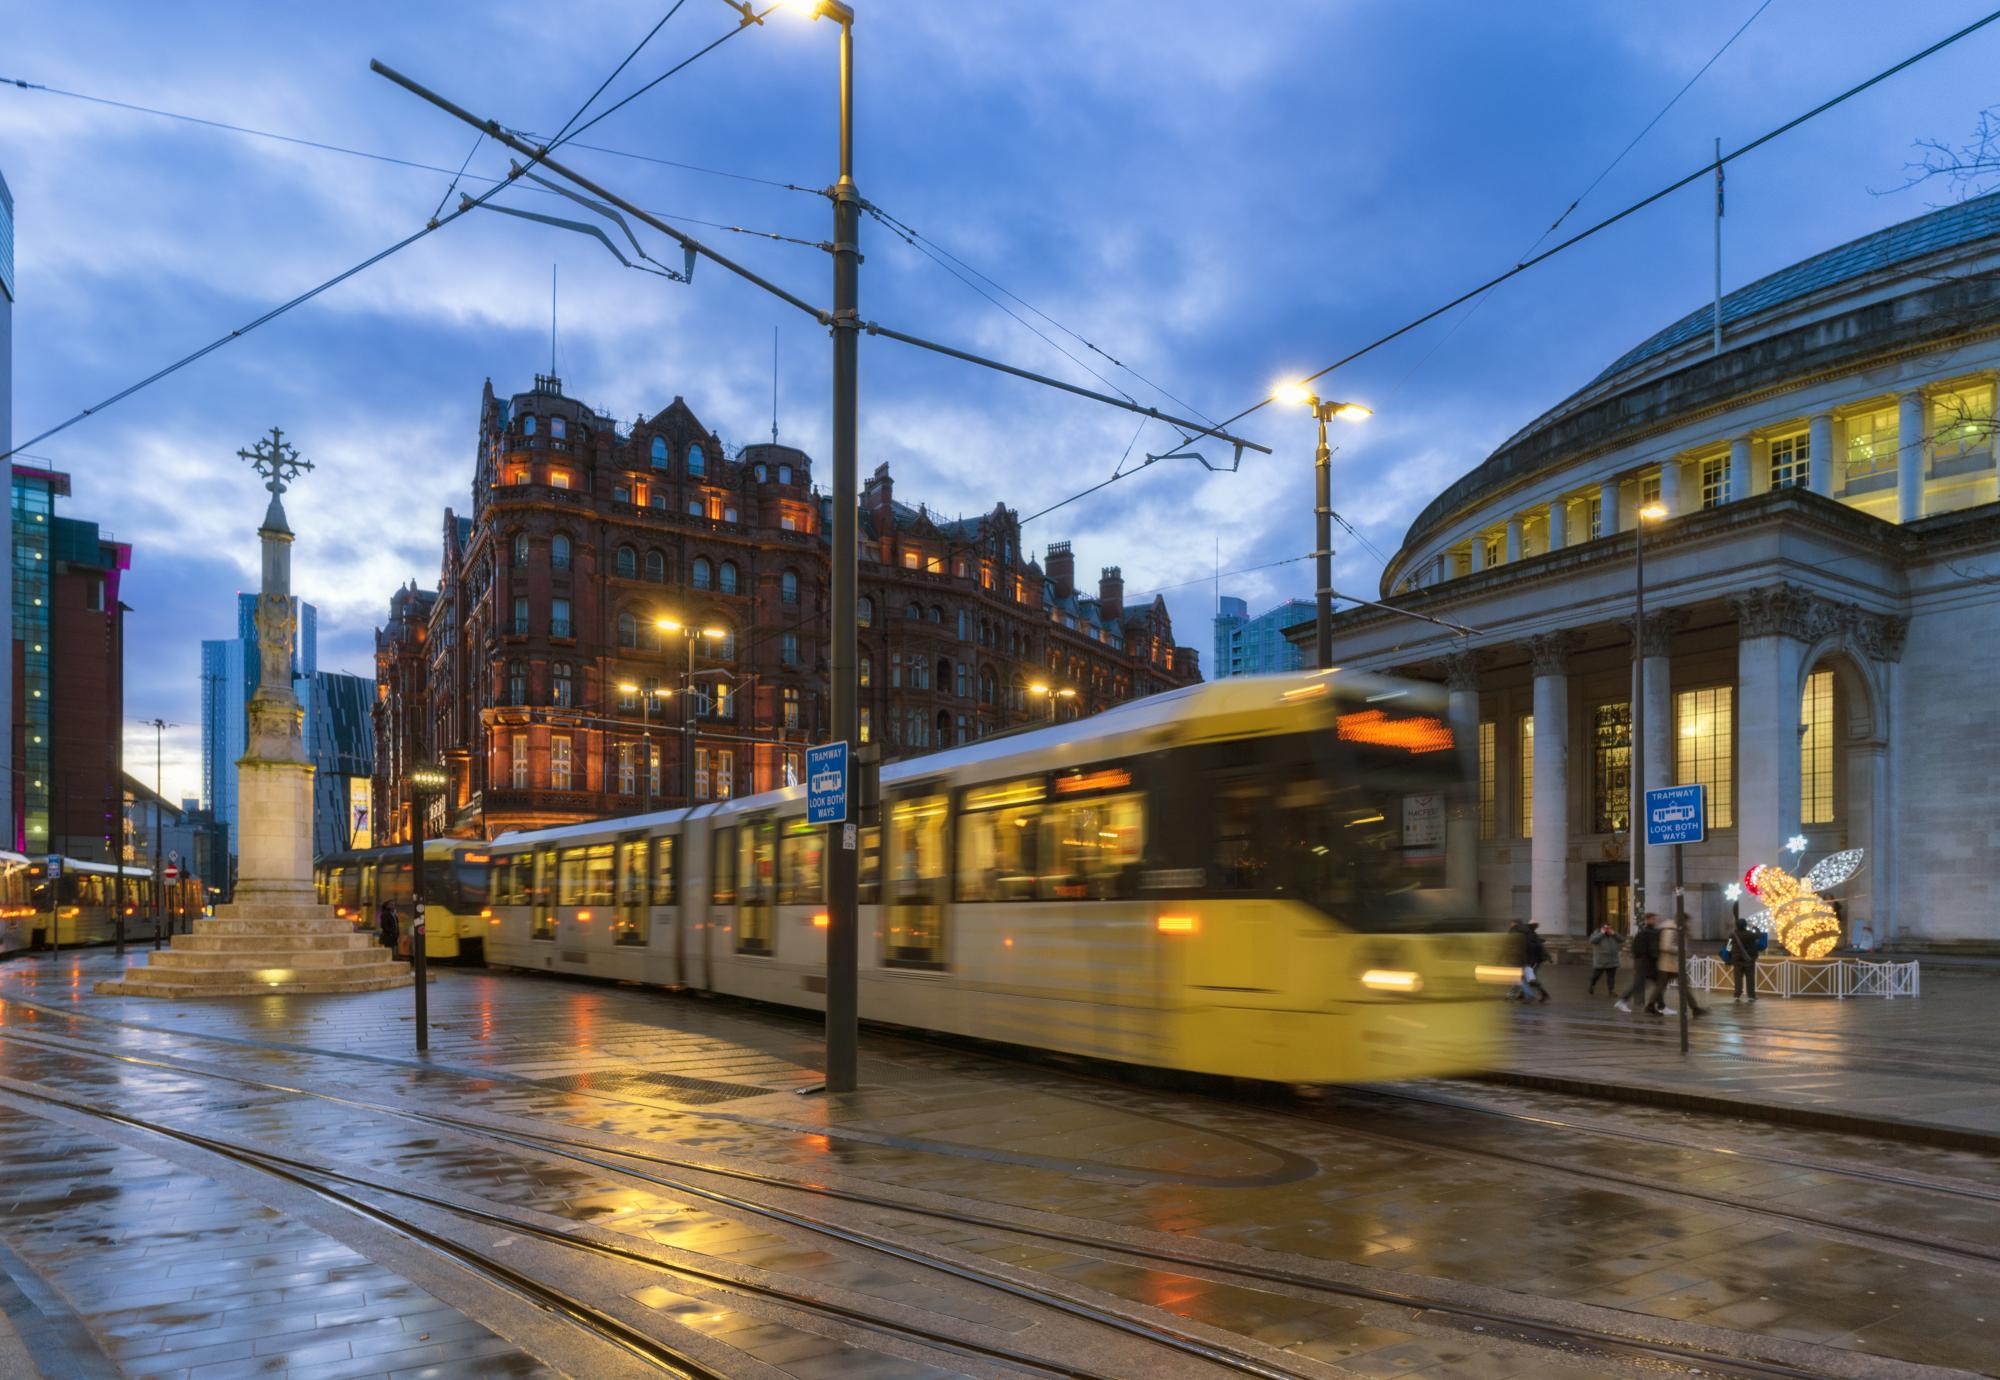 Blurred tram in Manchester